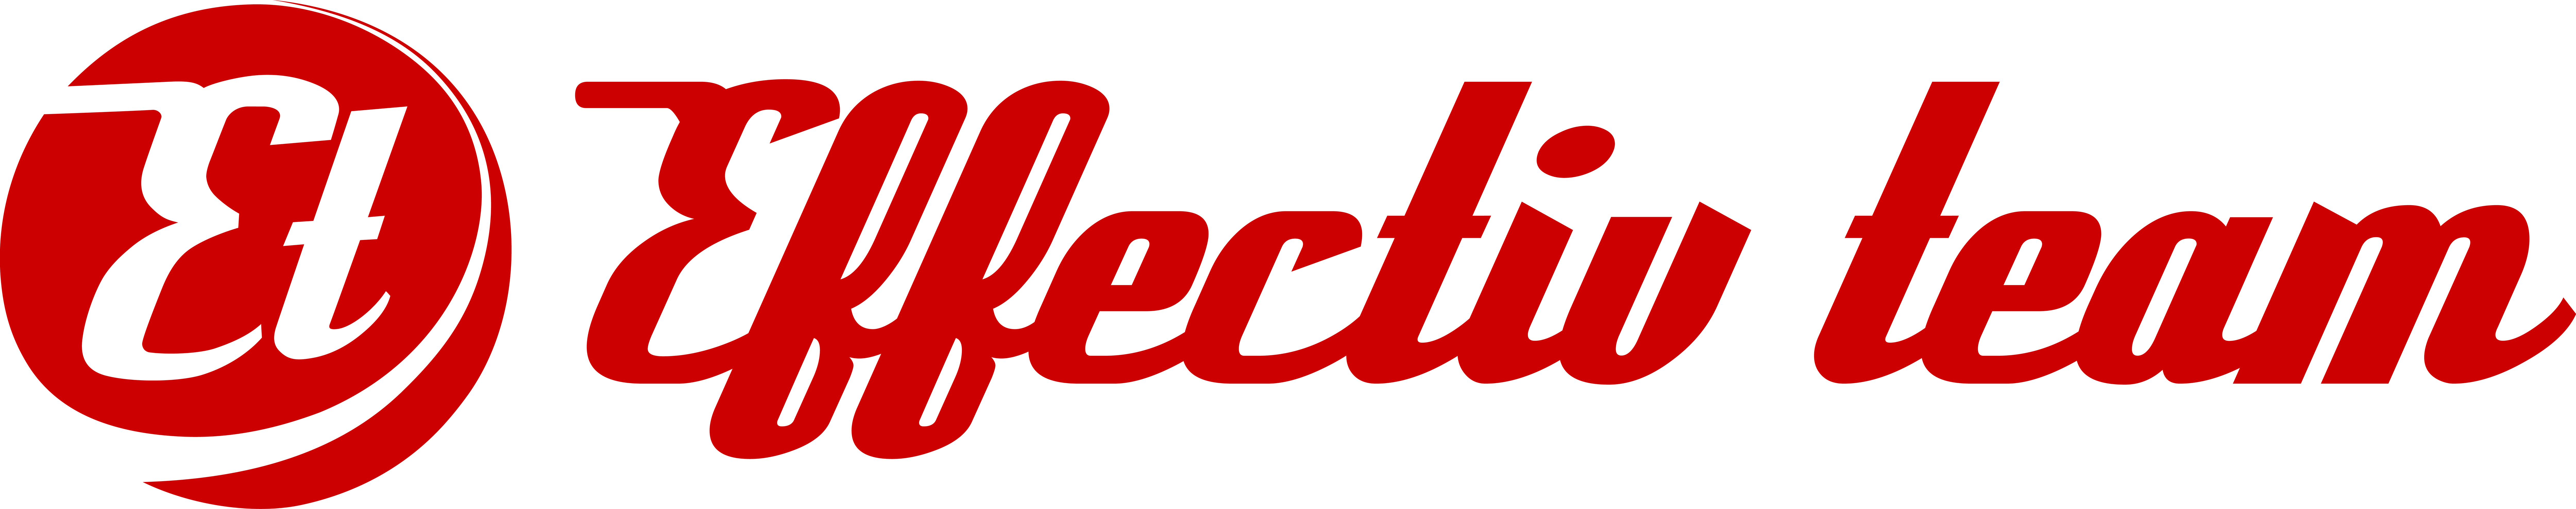 Logo Effectiv team sfx